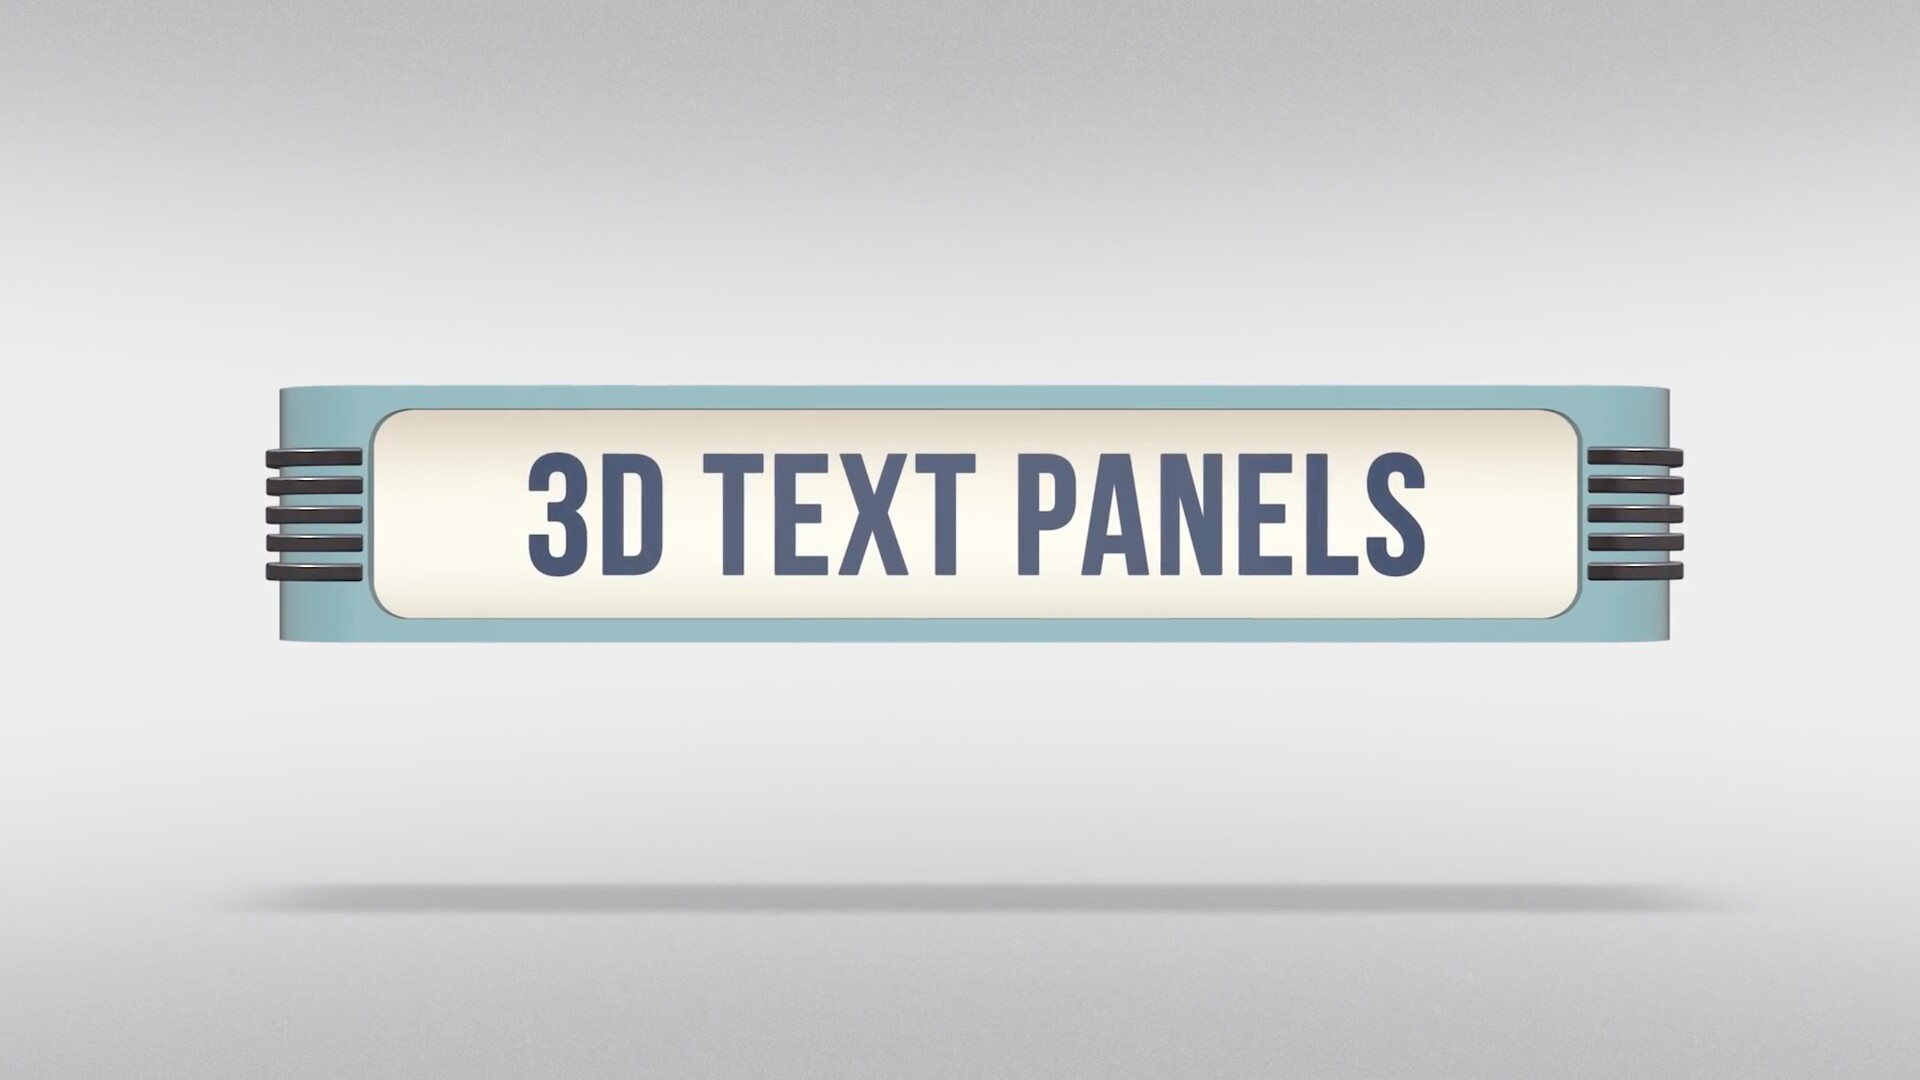 FCPX插件:面板标题插件SquidFX 3D Text Panels 